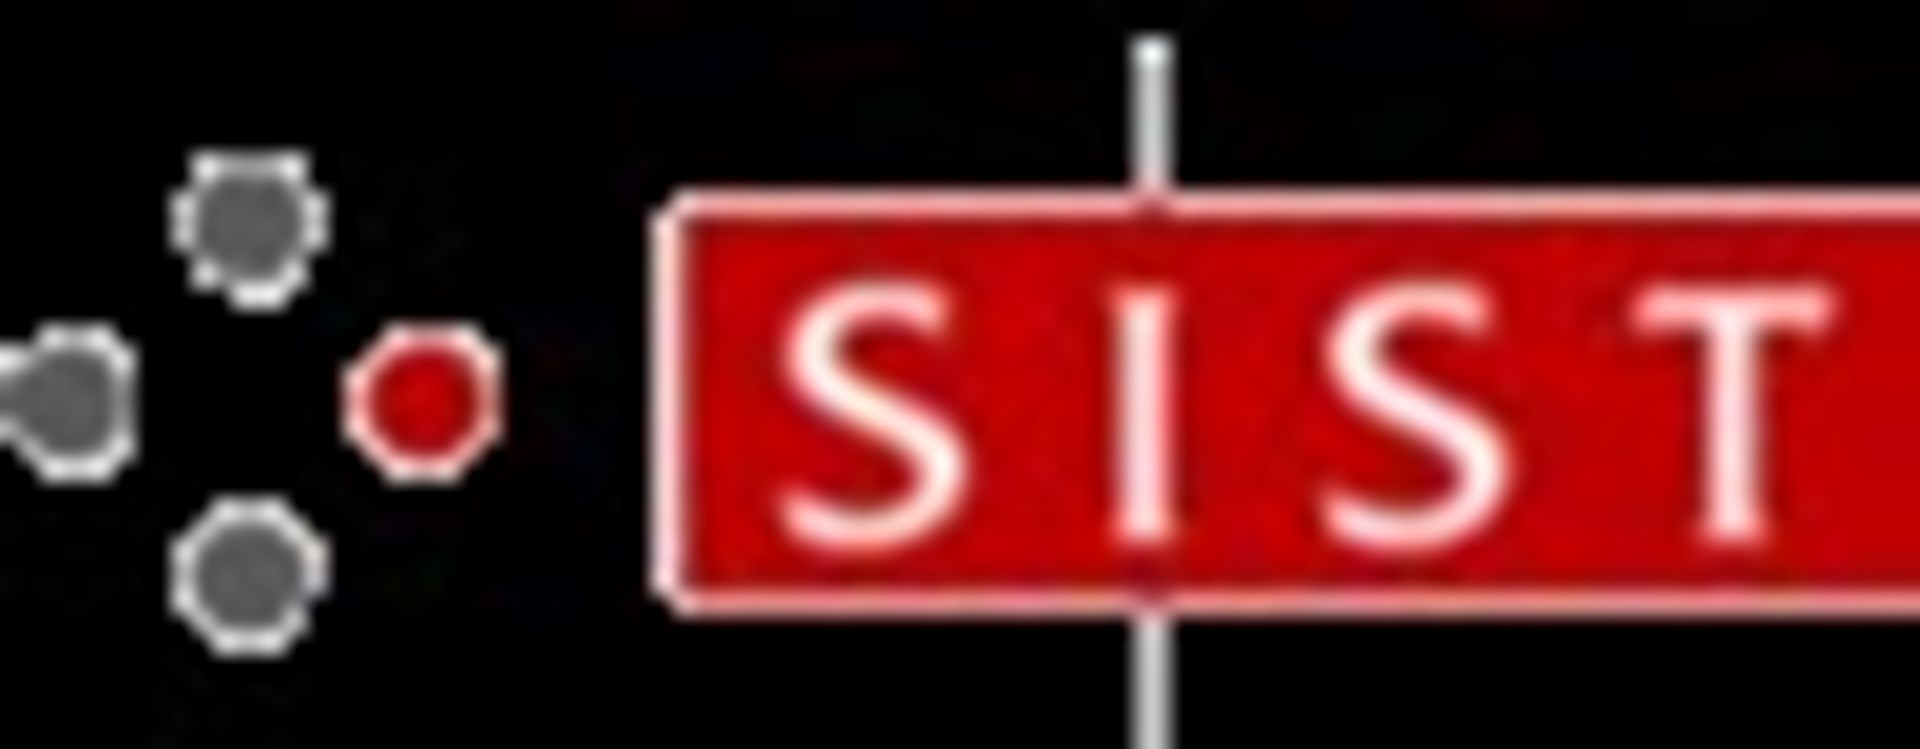 Slovenski institut za standardizaciju SIST